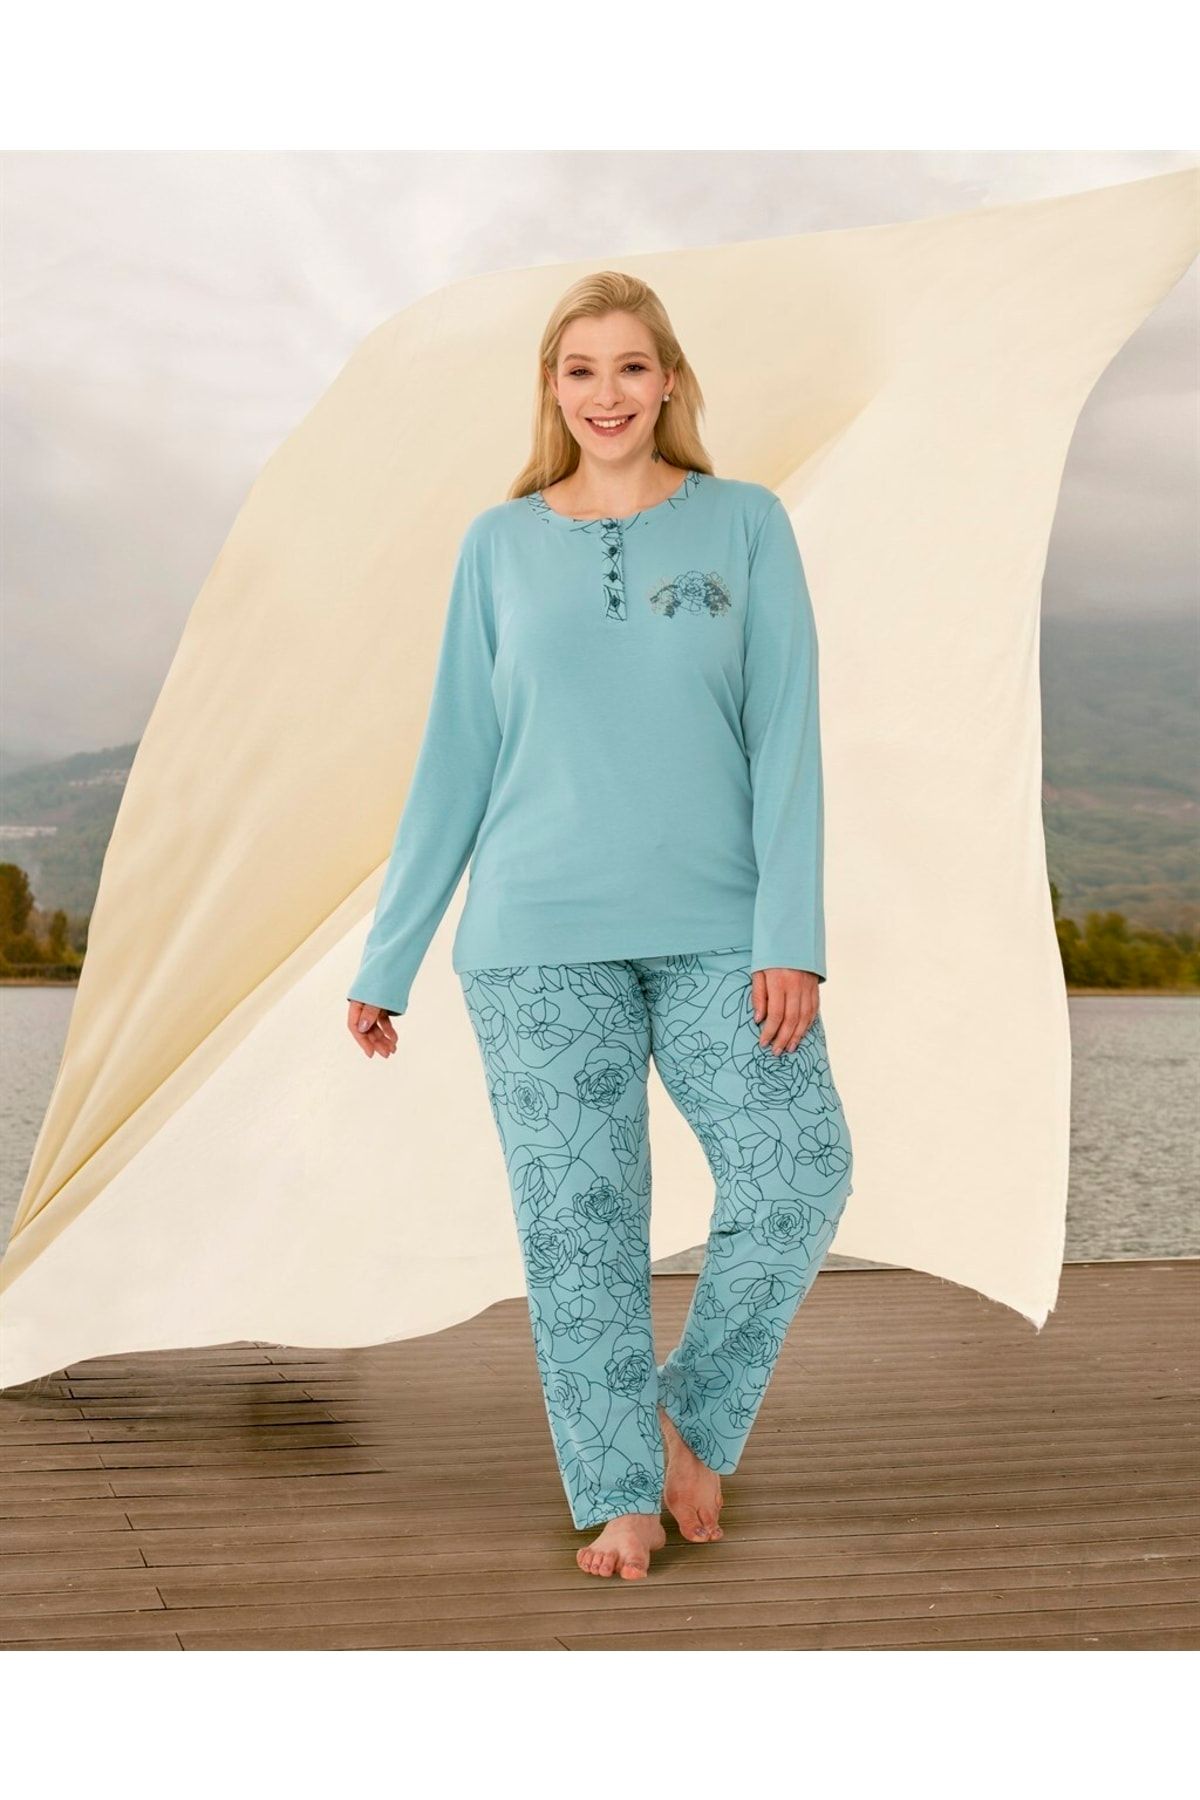 Doreanse Kadın Büyük Beden Mavi Çiçek Baskılı Uzun Kol T-shirt Pijama Takımı 4083p